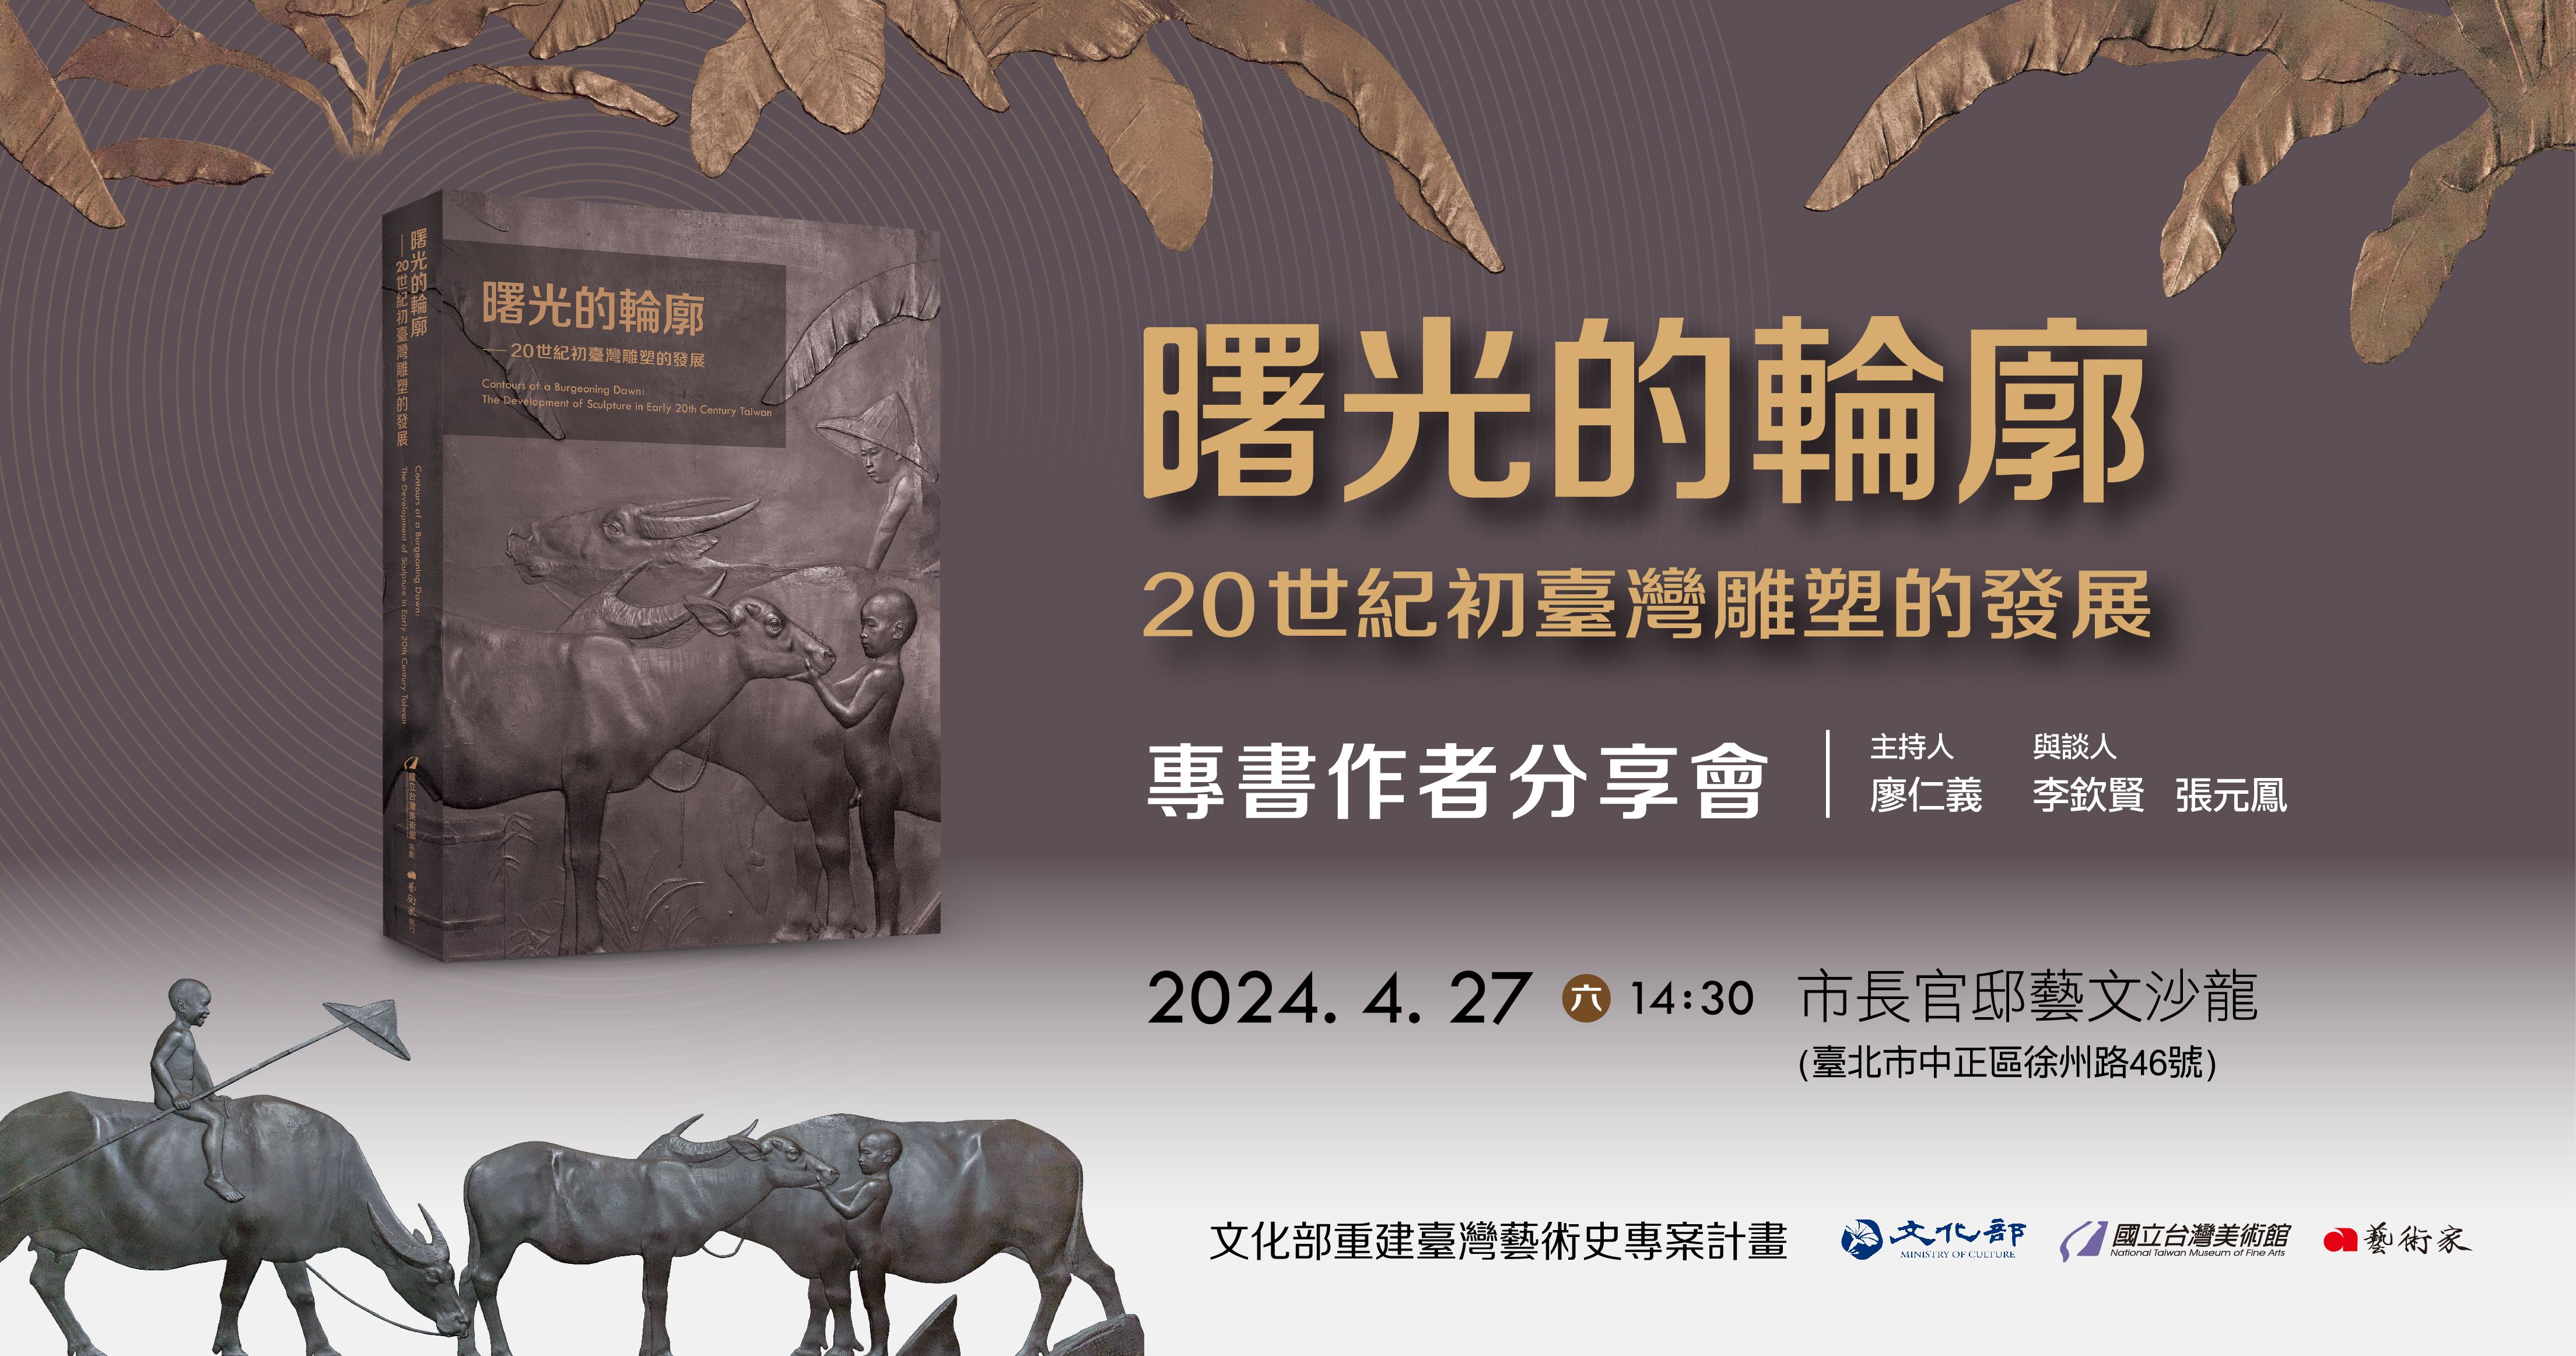 《曙光的輪廓－20世紀初臺灣雕塑的發展》專書作者分享會